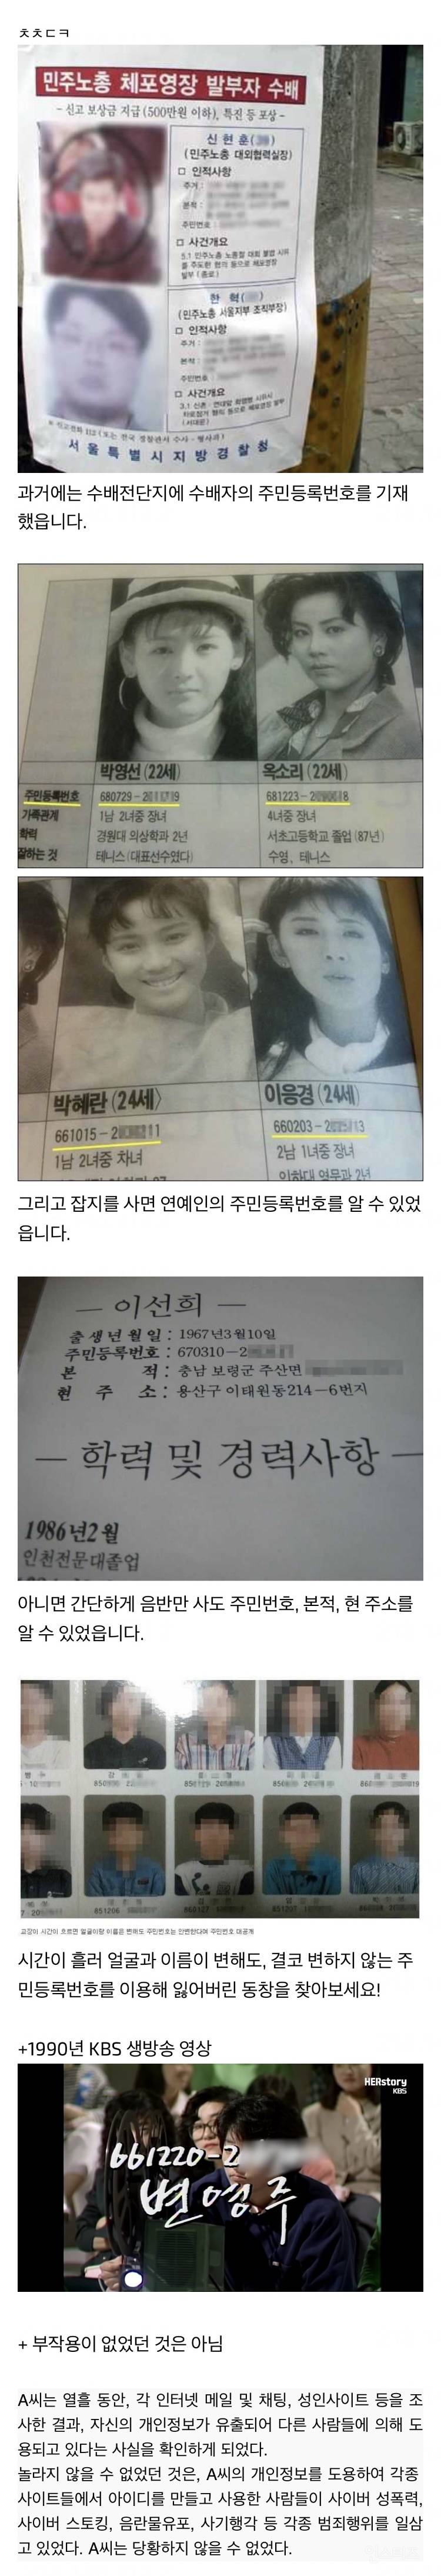 전화번호부 정도는 양호한 편이었던 과거 한국의 개인정보 상황 | 인스티즈